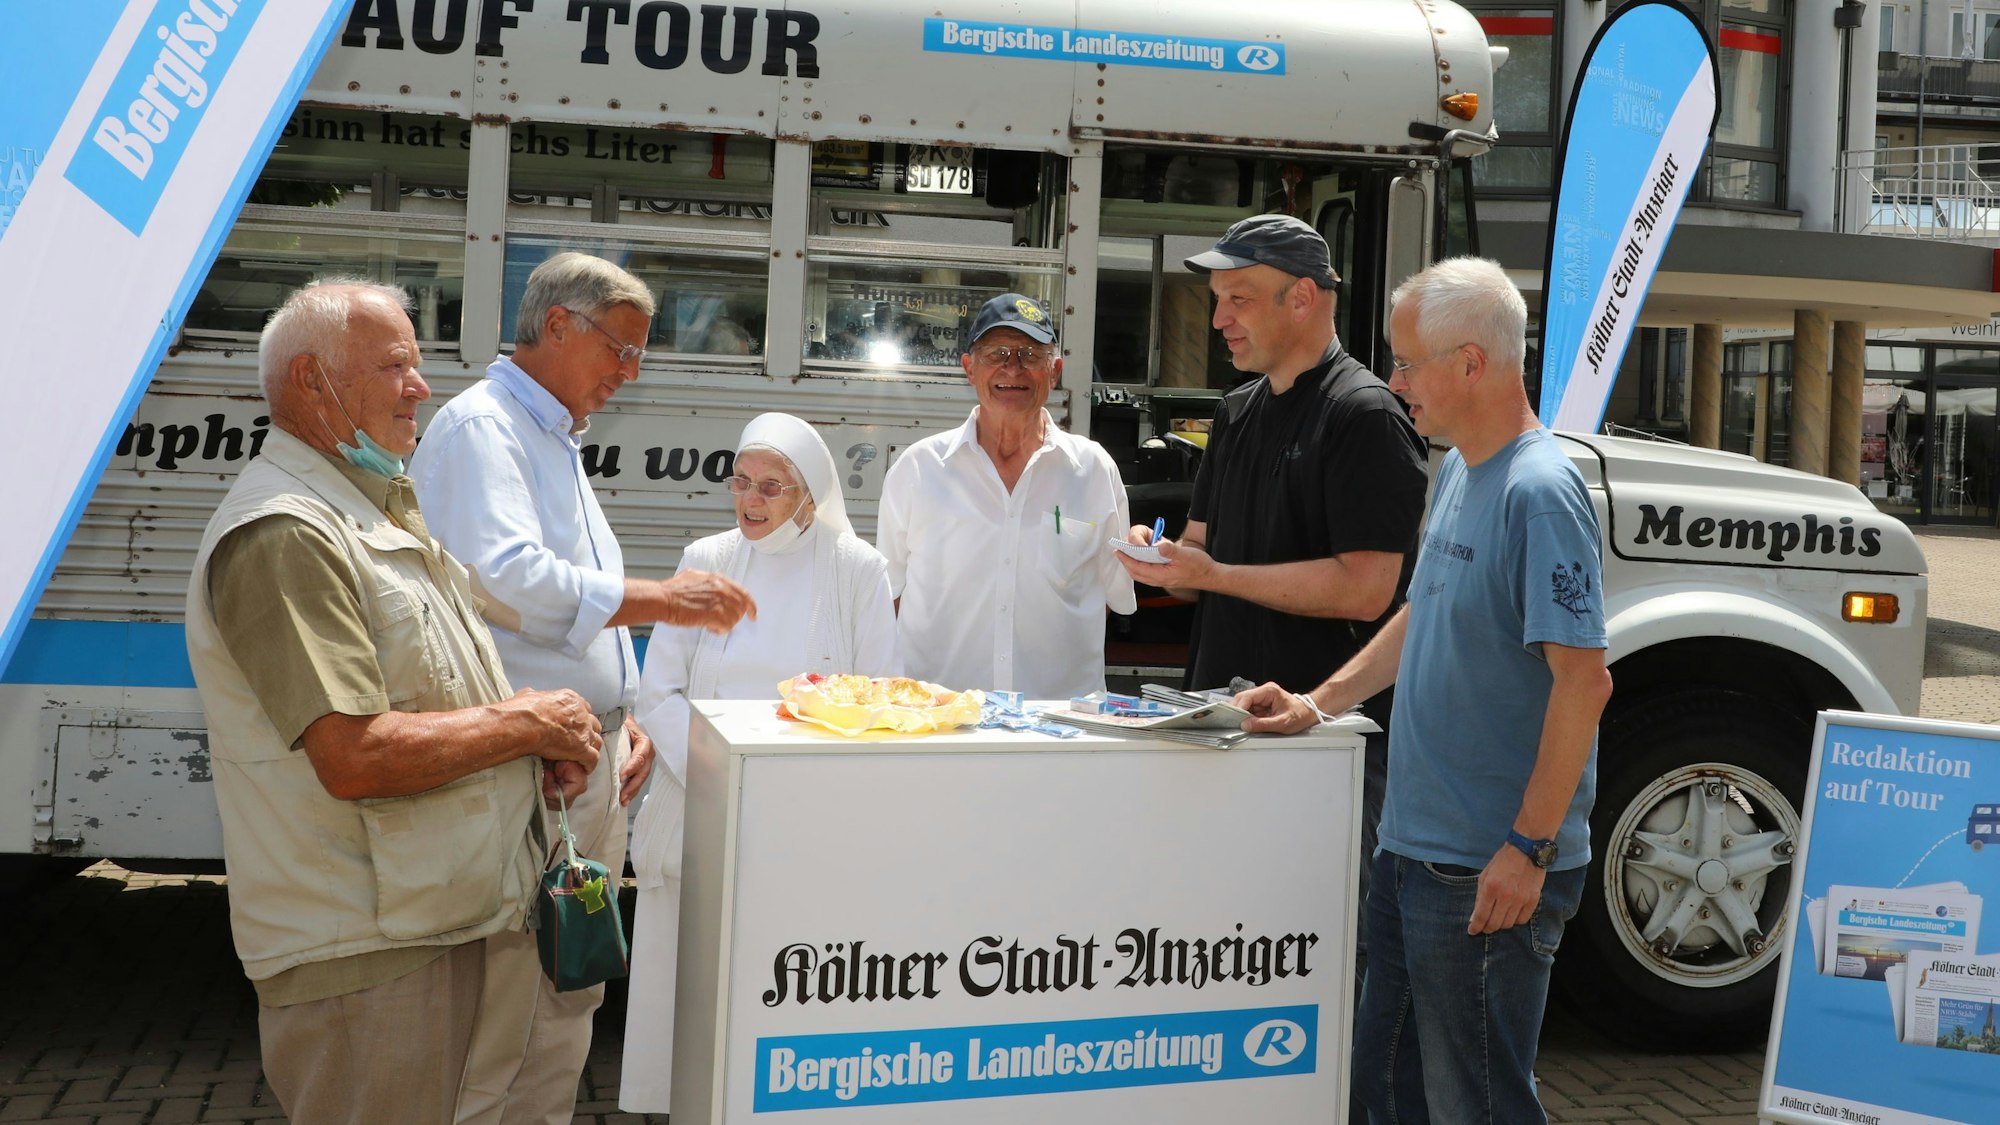 Menschen stehen um eine Infotheke vor einem historischen amerikanischen Schulbus. Auf der Theke und auf Fahnen sind die Zeitungstitel Bergische Landeszeitung und Kölner Stadt-Anzeiger zu lesen.